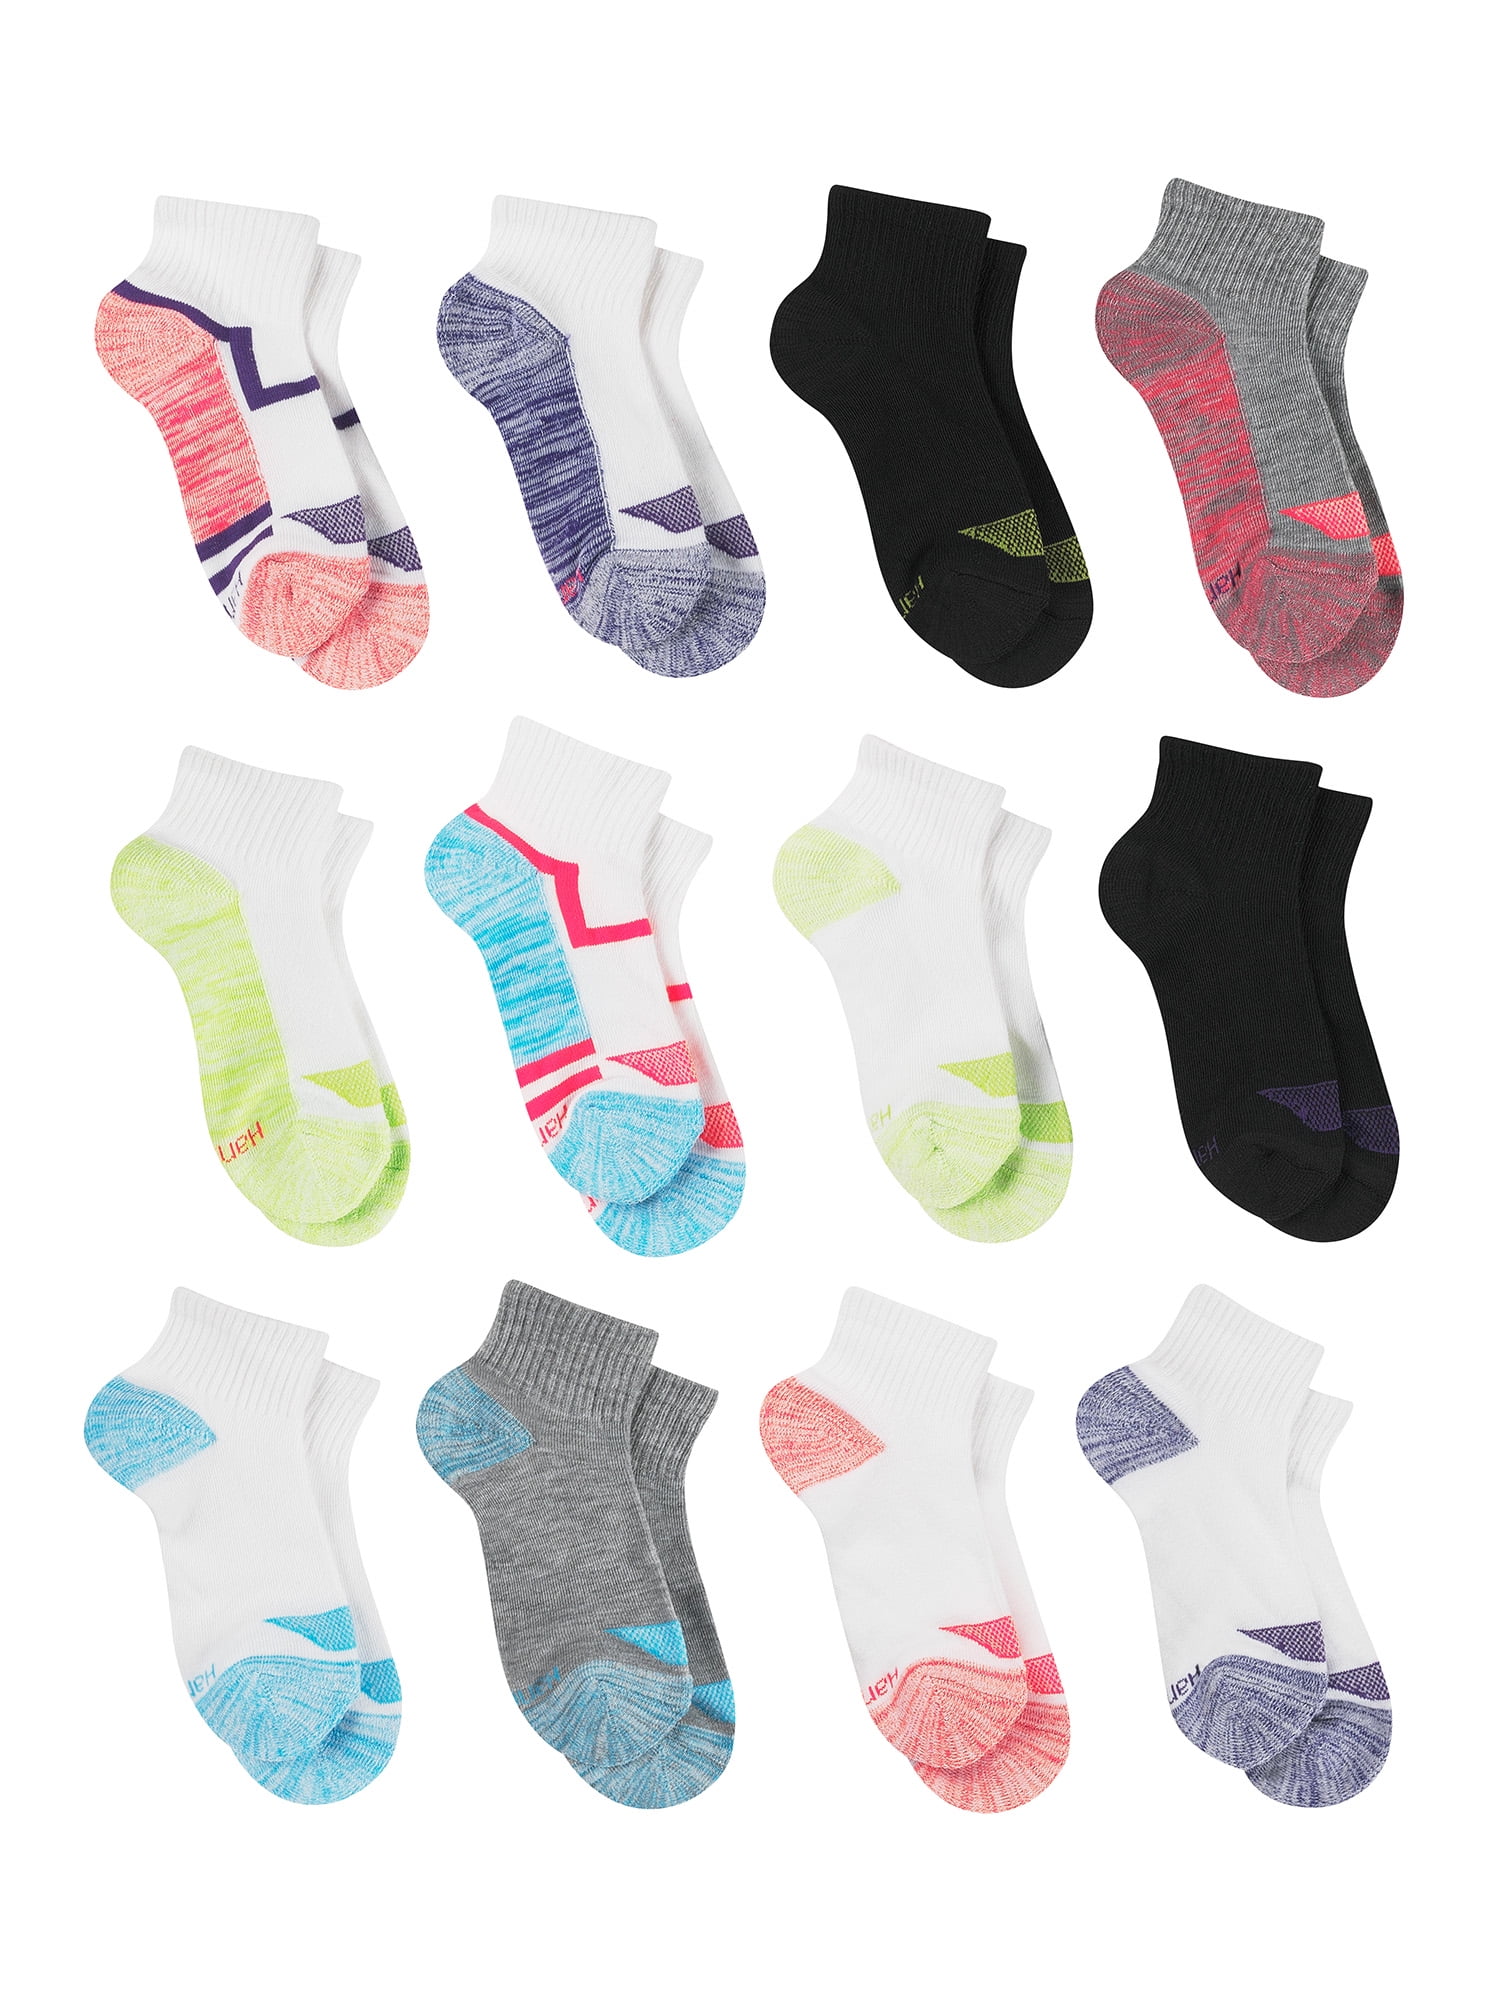 Hanes Girls Socks, 12 Pack Cool Comfort Ankle Socks, Sizes S-L ...